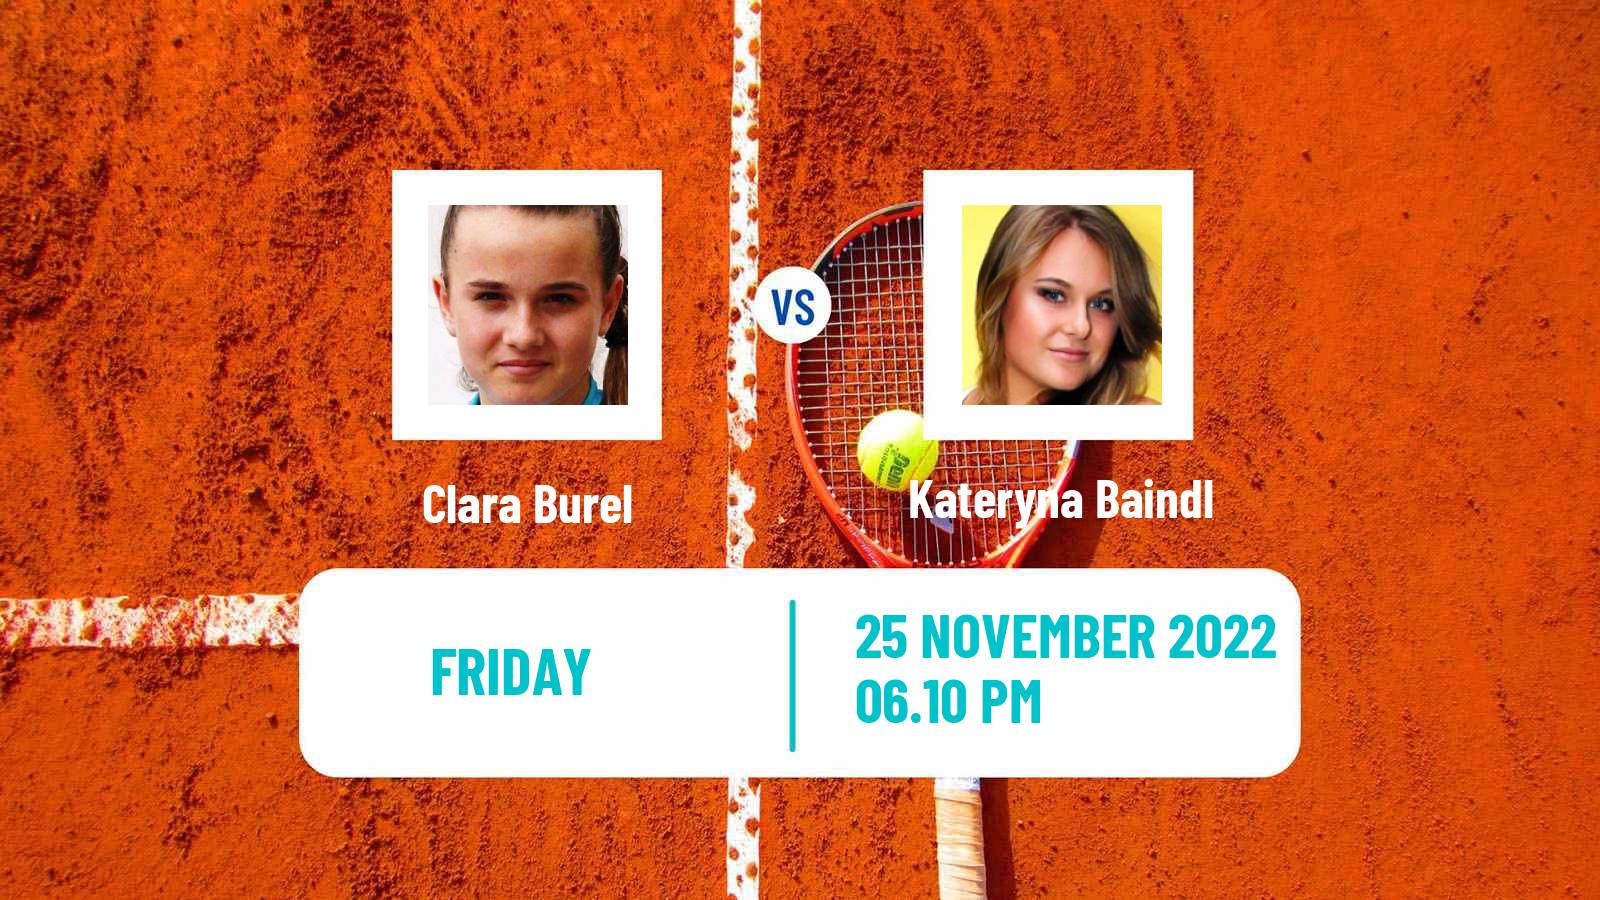 Tennis ATP Challenger Clara Burel - Kateryna Baindl